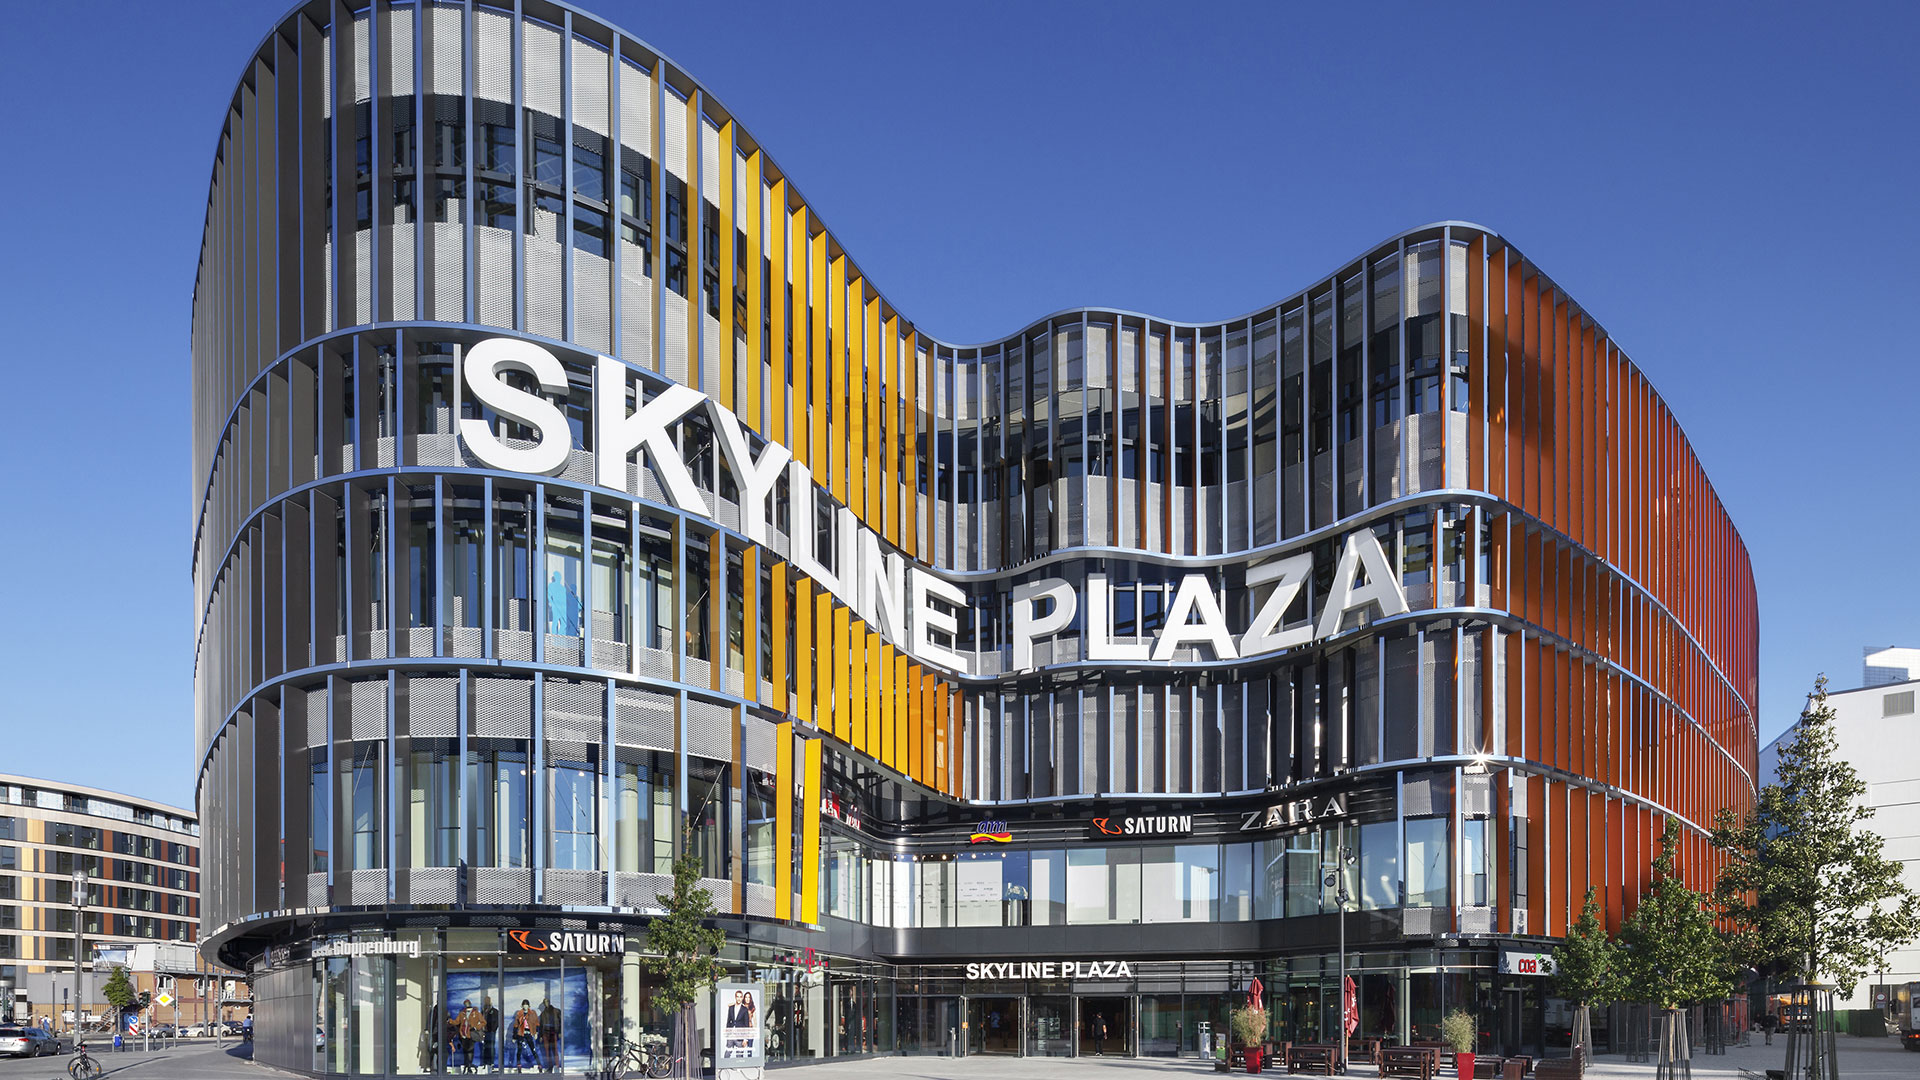 Verglasung für Shopping Mall Skyline Plaza in Frankfurt am Main